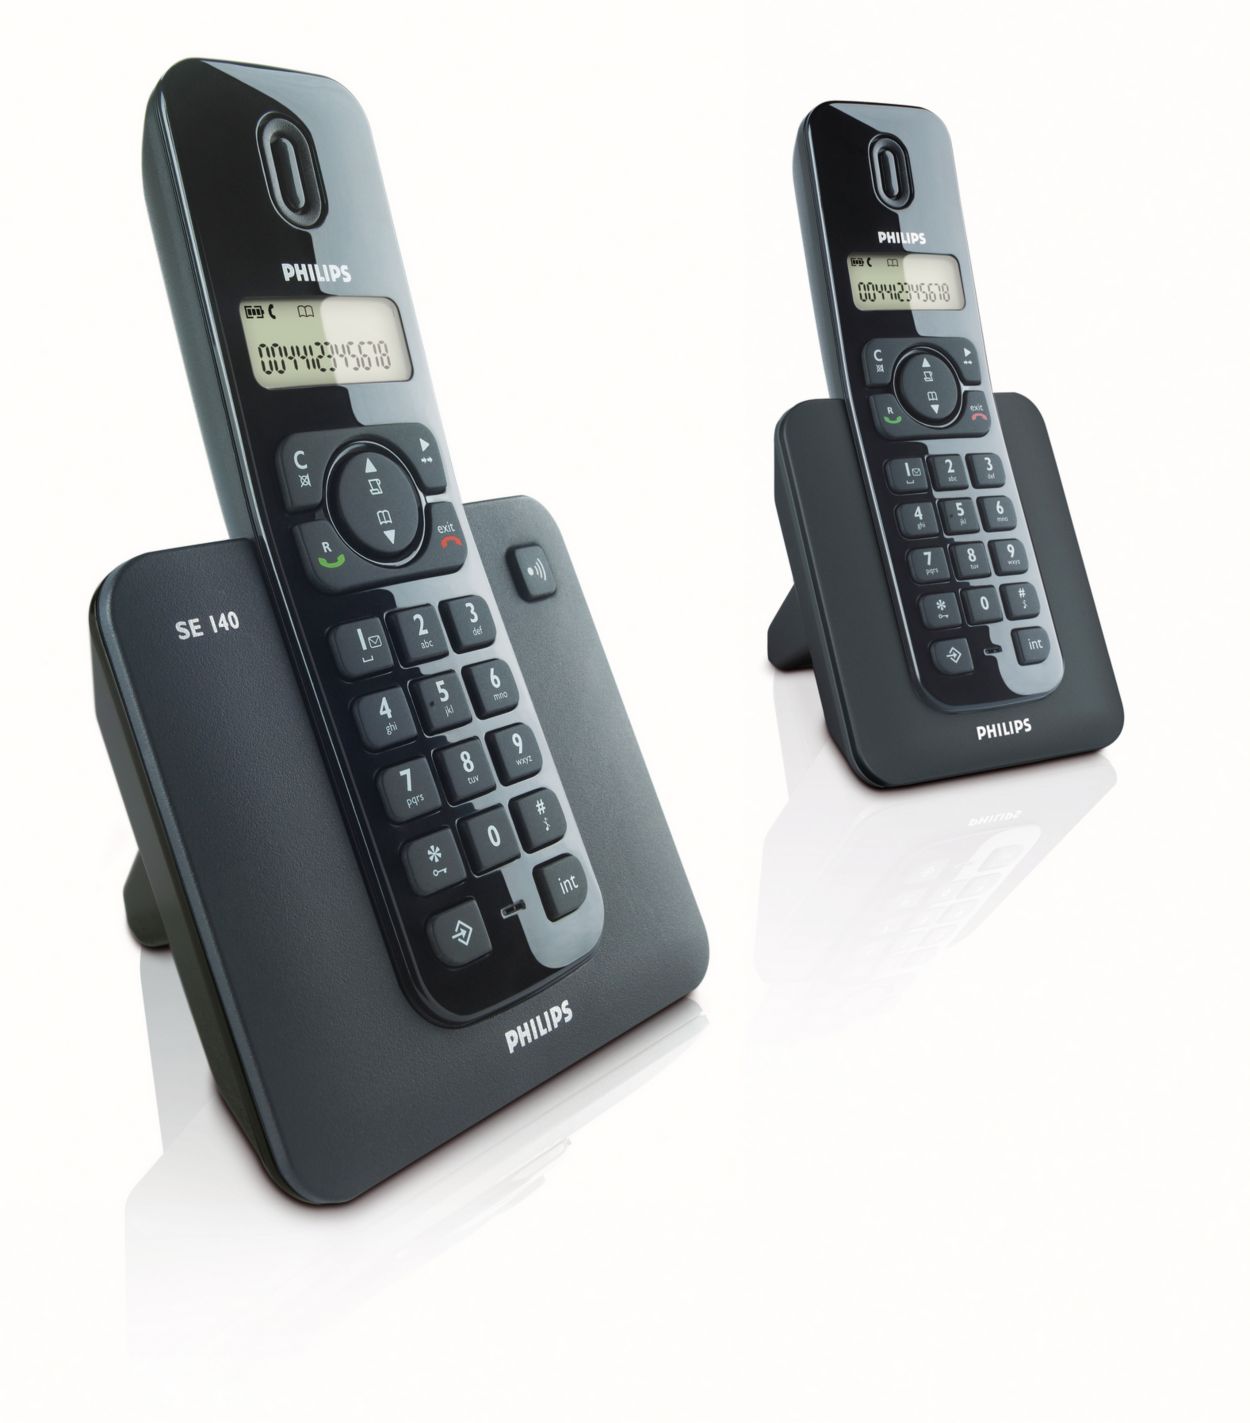 Телефоны 24 отзывы. Радиотелефон Philips se 7401. Радиотелефон Philips se 7451. Реткмекс 21 телефон. Домашний телефон Philips se 440 цена.